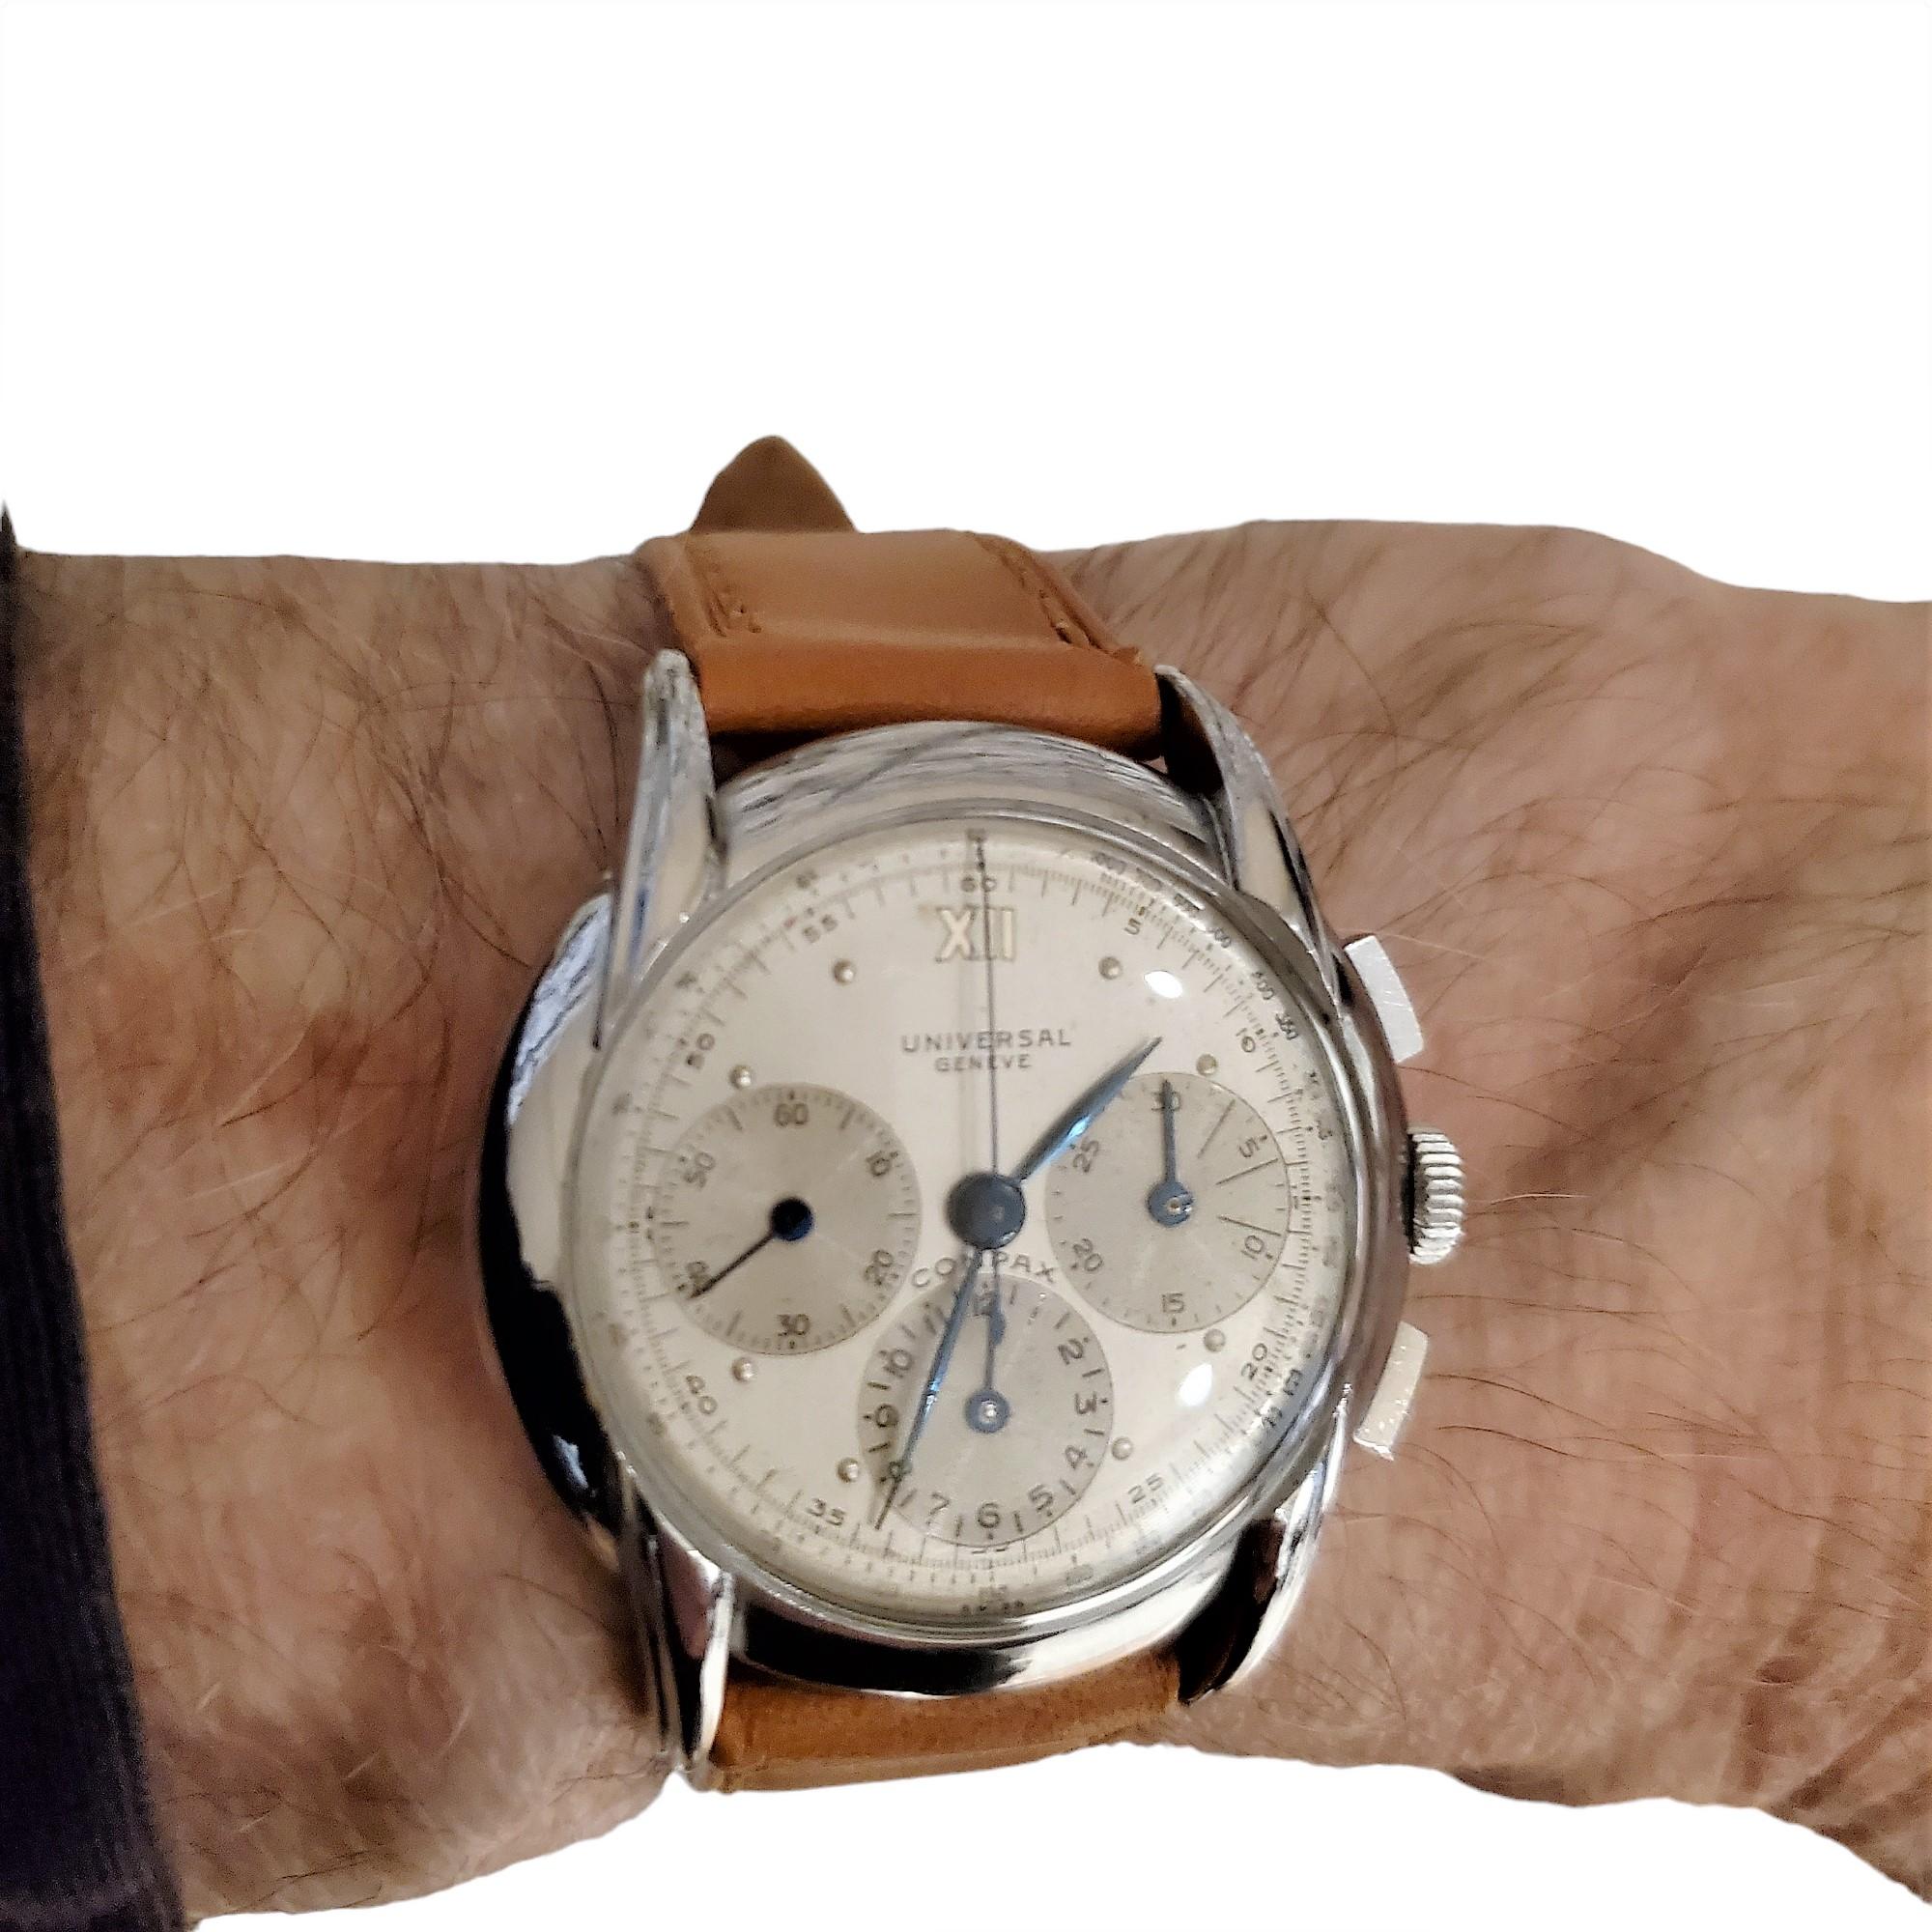 Universal Geneve Compax Chronograph Ref. # 22270;  aus rostfreiem Stahl.  Die Uhr misst 36 mm mit großen, geriffelten, umgedrehten Bandanstößen, einem silbernen, zweifarbigen Zifferblatt mit einer 12-Stunden-Anzeige, einer 30-Minuten-Anzeige und